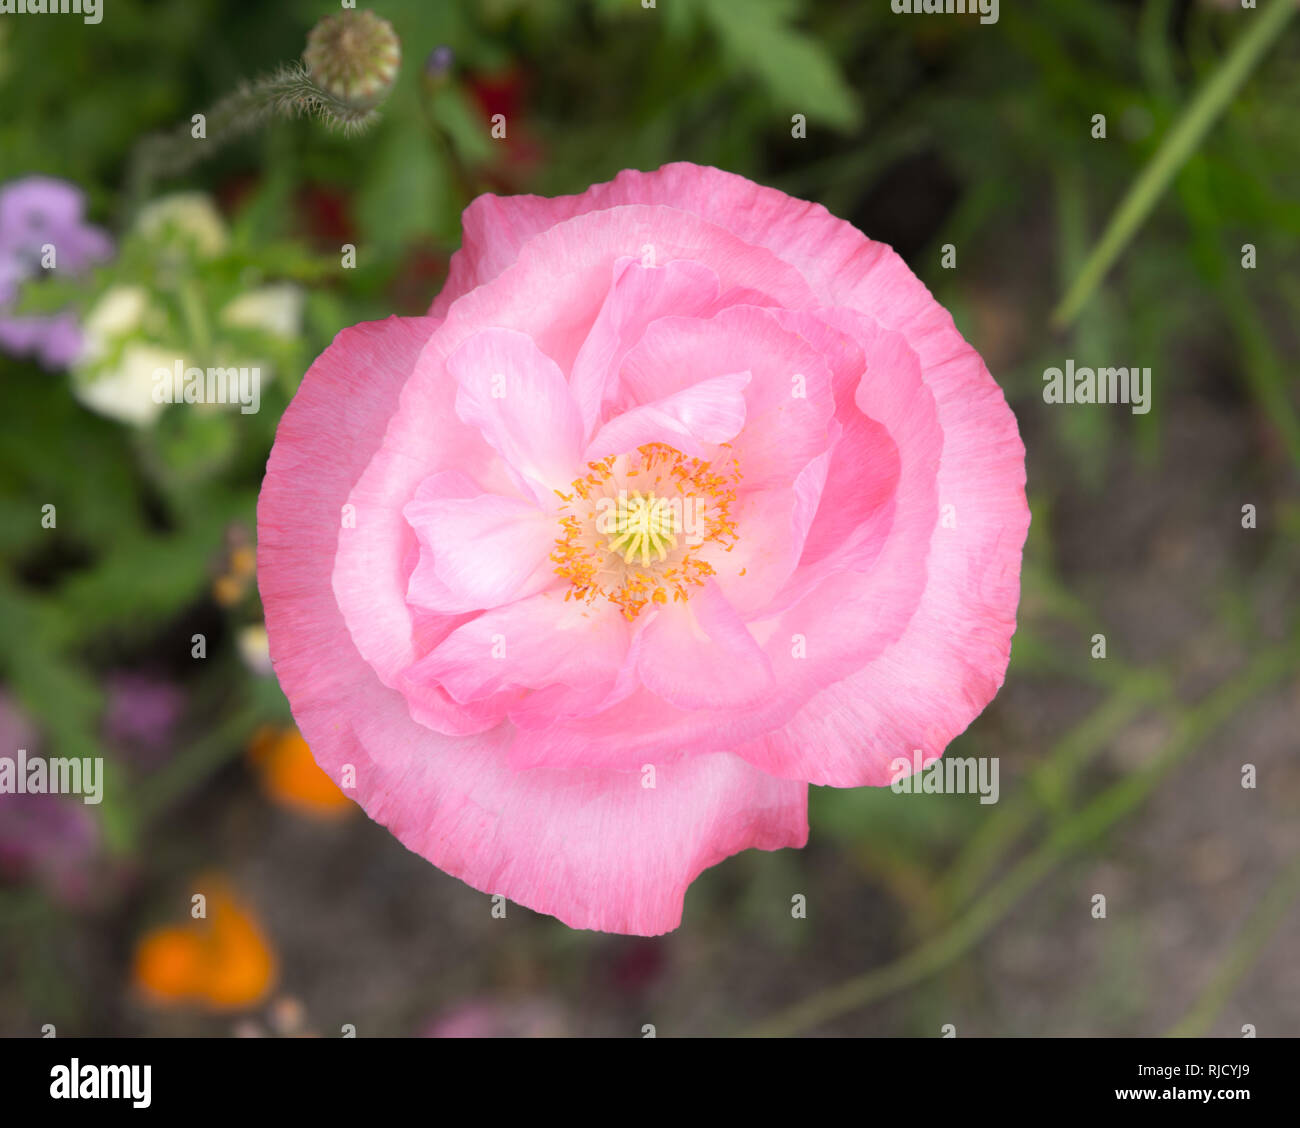 Eine zarte papery soft pink Poppy Flower. Nach unten geschossen, Stadtzentrum, umrahmt von Mohn center mit Staubgefäßen und Saatgut Pod angezeigt. Makro. Stockfoto